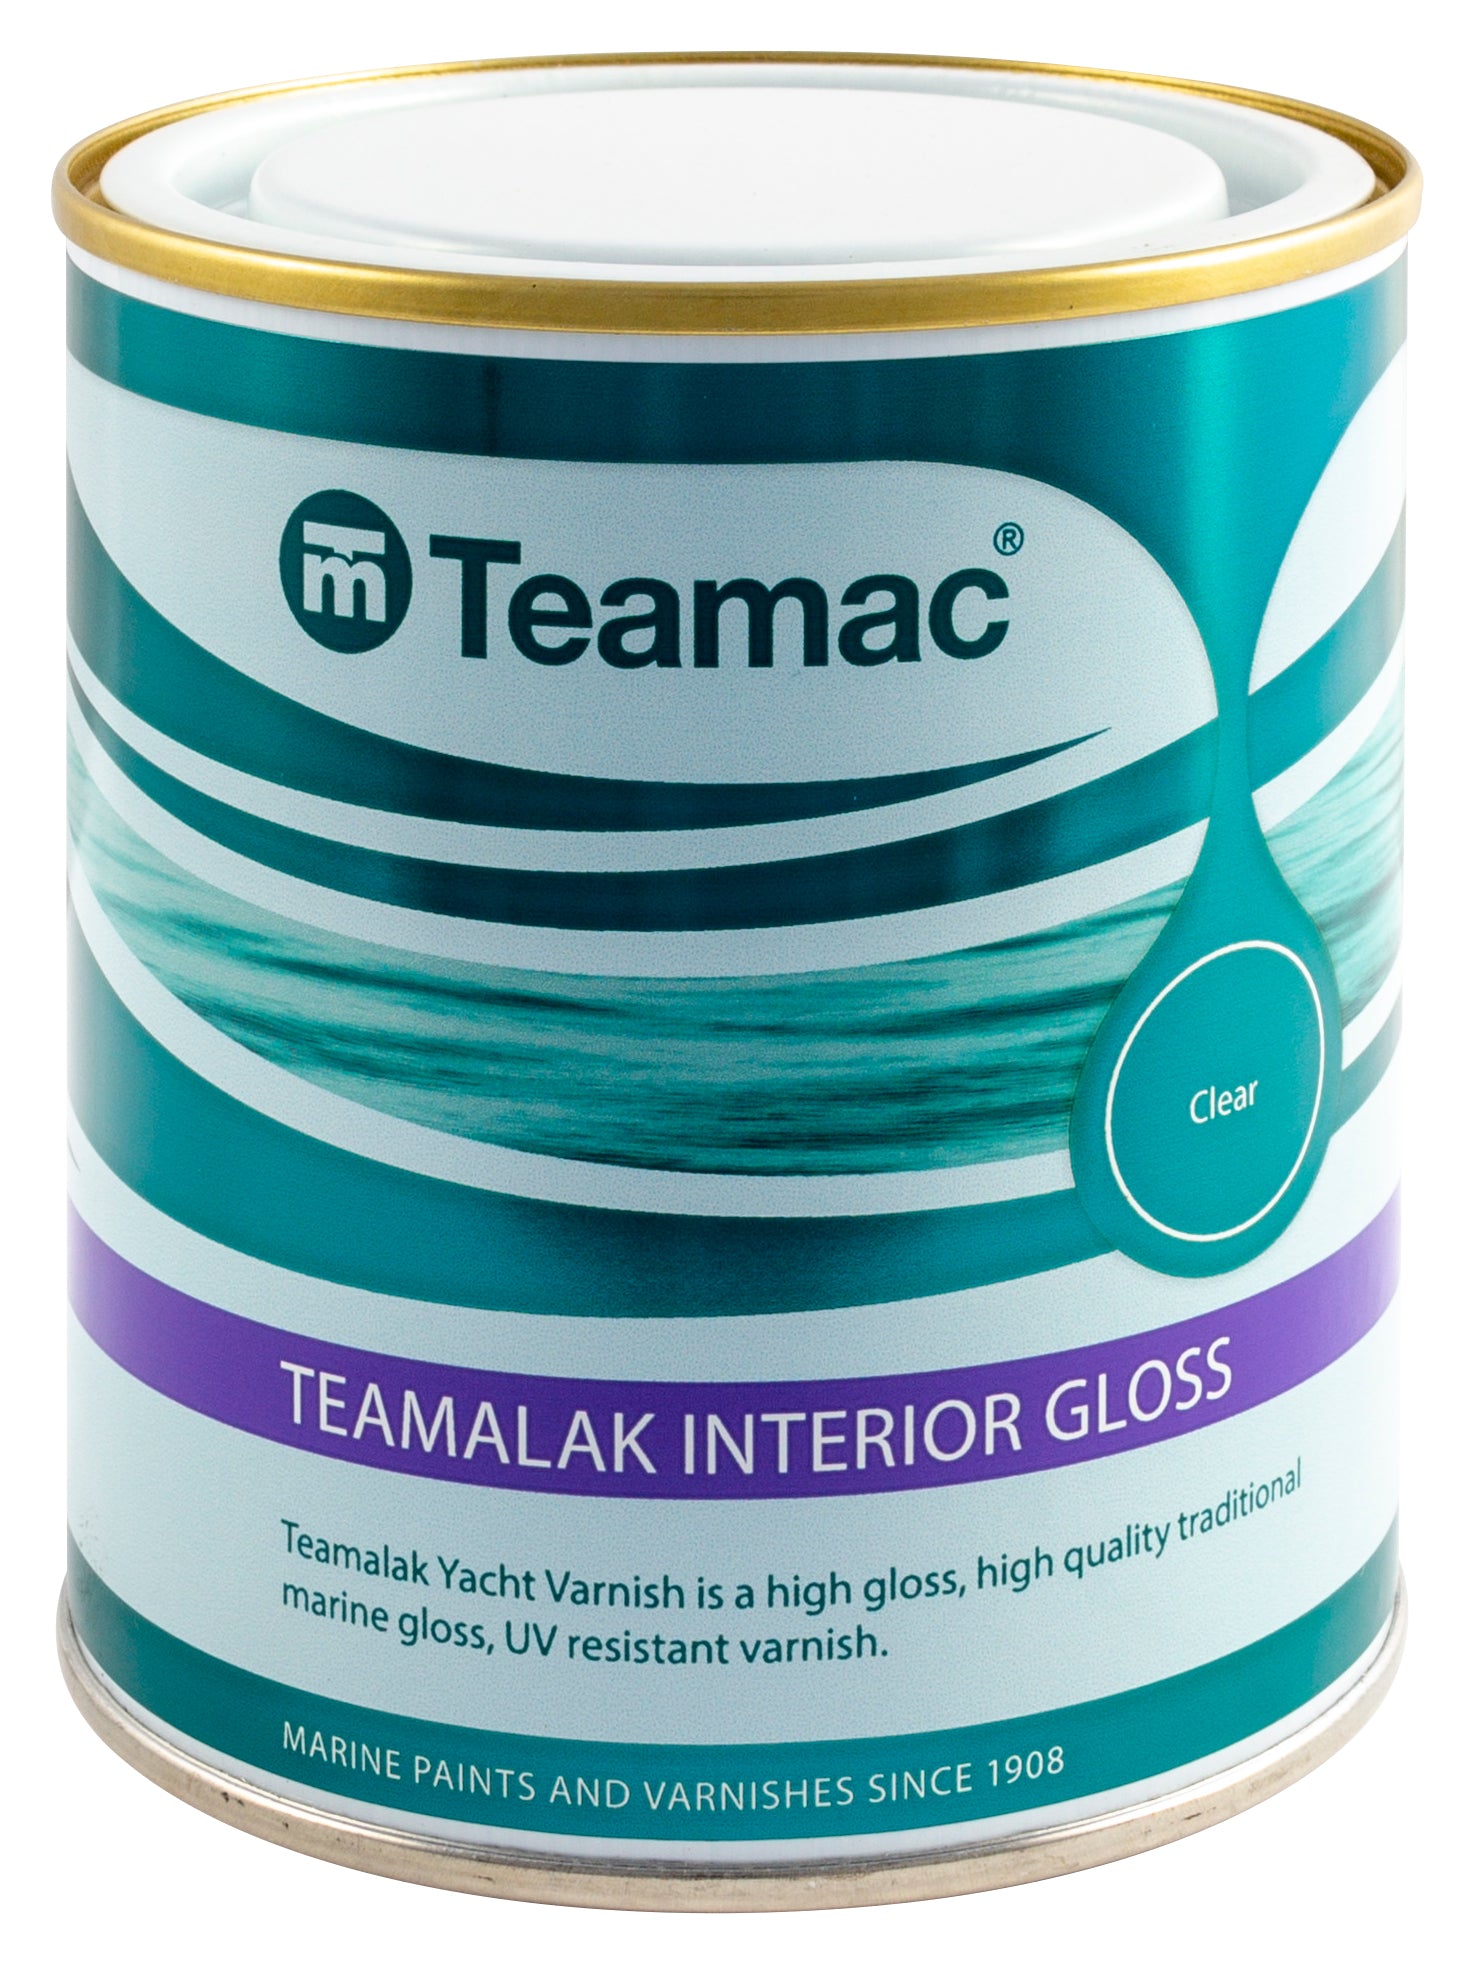 teamac-marine-teamalak-interior-gloss-varnish